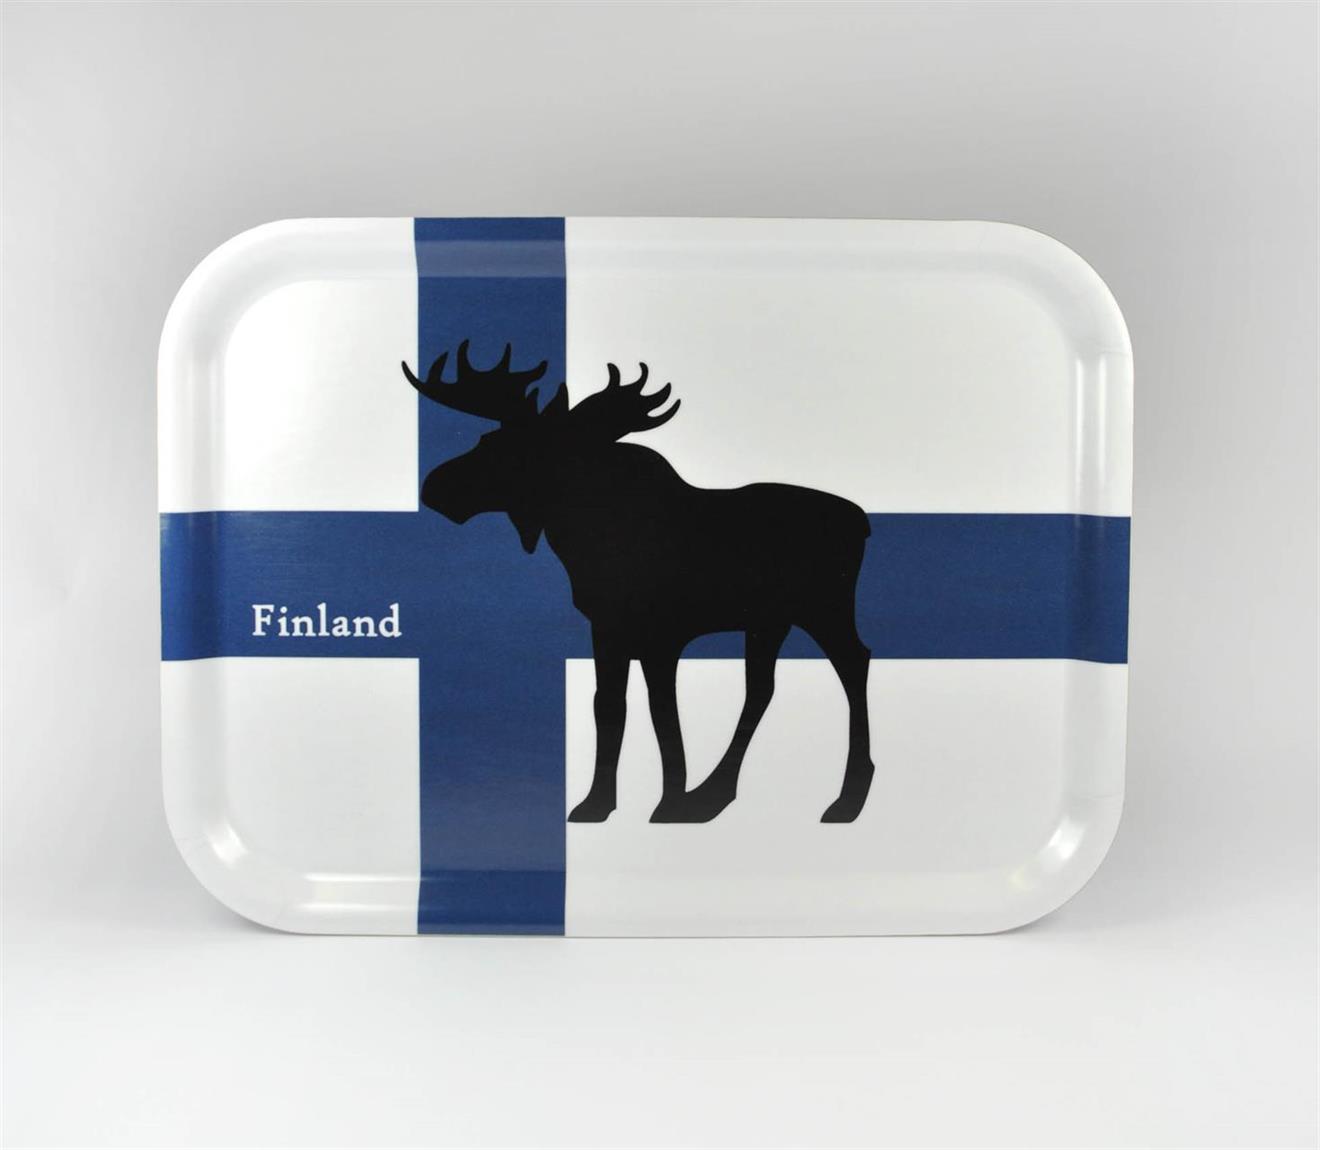 Bricka 27x20 cm, Finnish Moose, blå-vit/svart älg